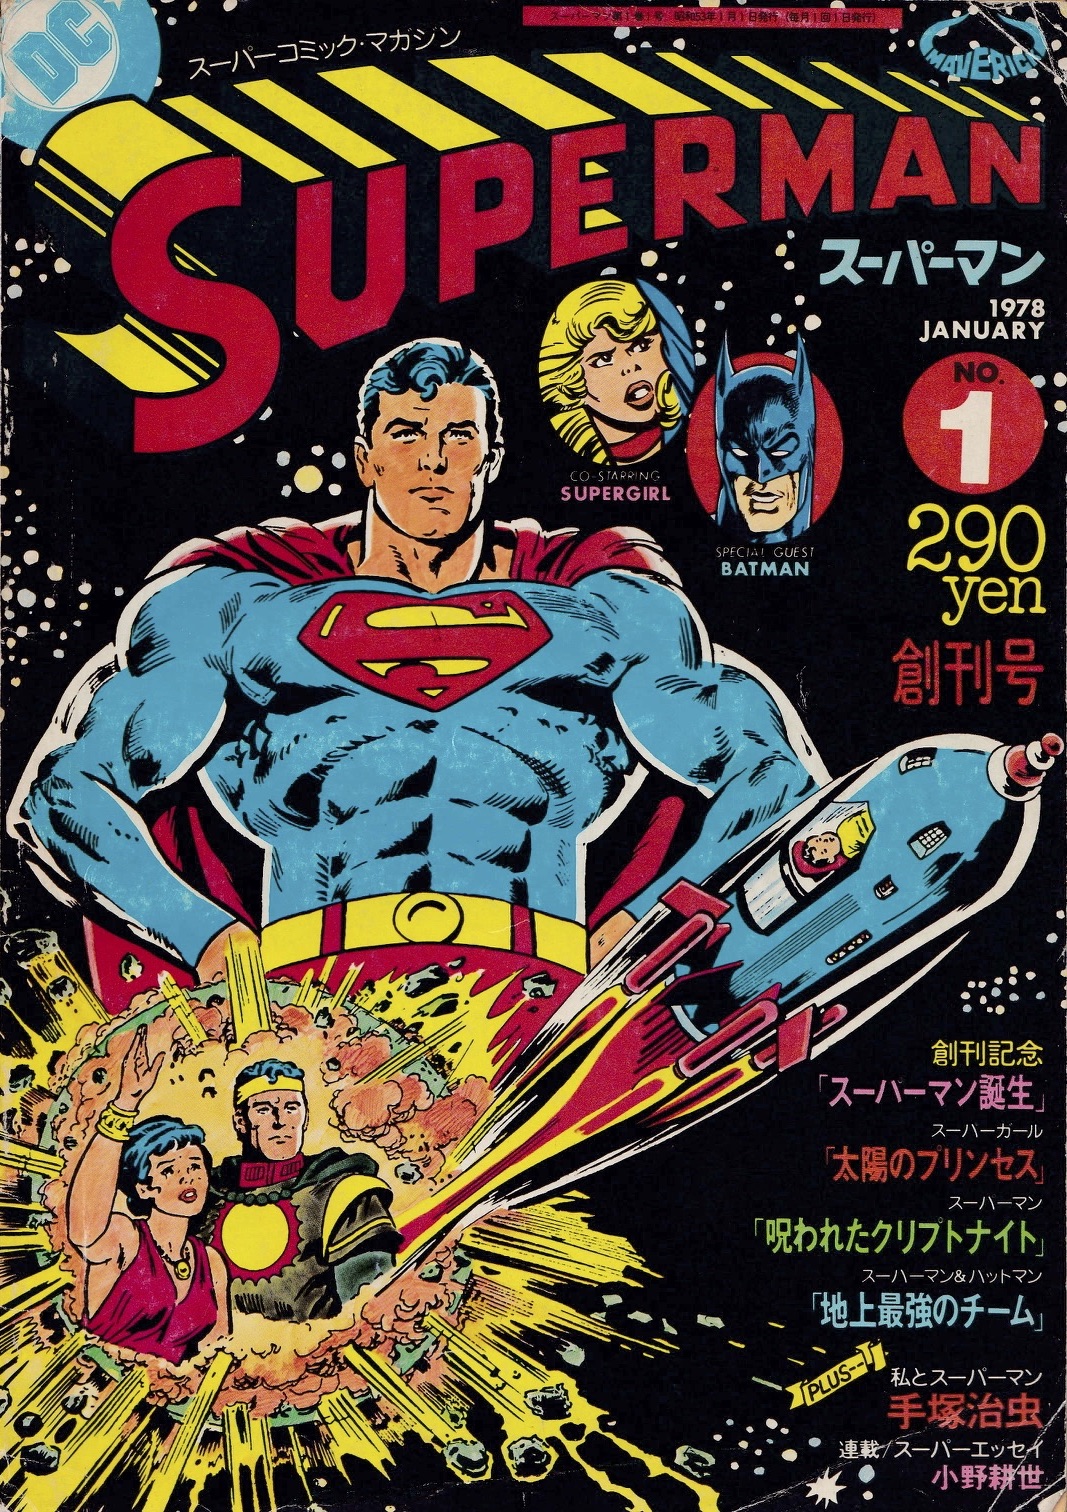 月刊スーパーマン Dcデータベース Wiki Fandom